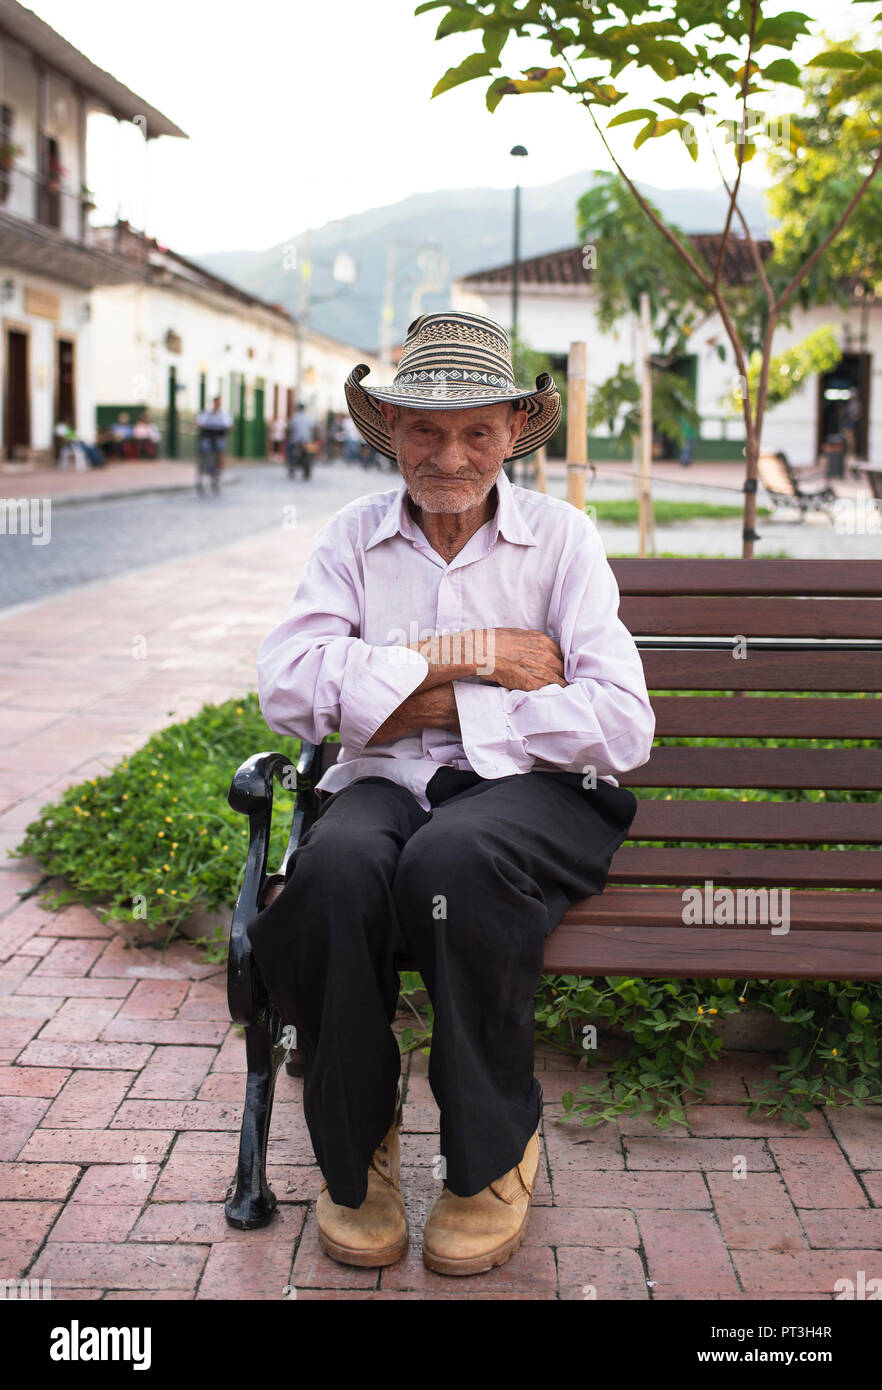 Ältere Latino Mann sitzt auf der Bank das Tragen der traditionellen sombrero vueltiao Hut. Santa Fe de Antioquia, Kolumbien. Redaktionelle Verwendung. Sep 2018 Stockfoto